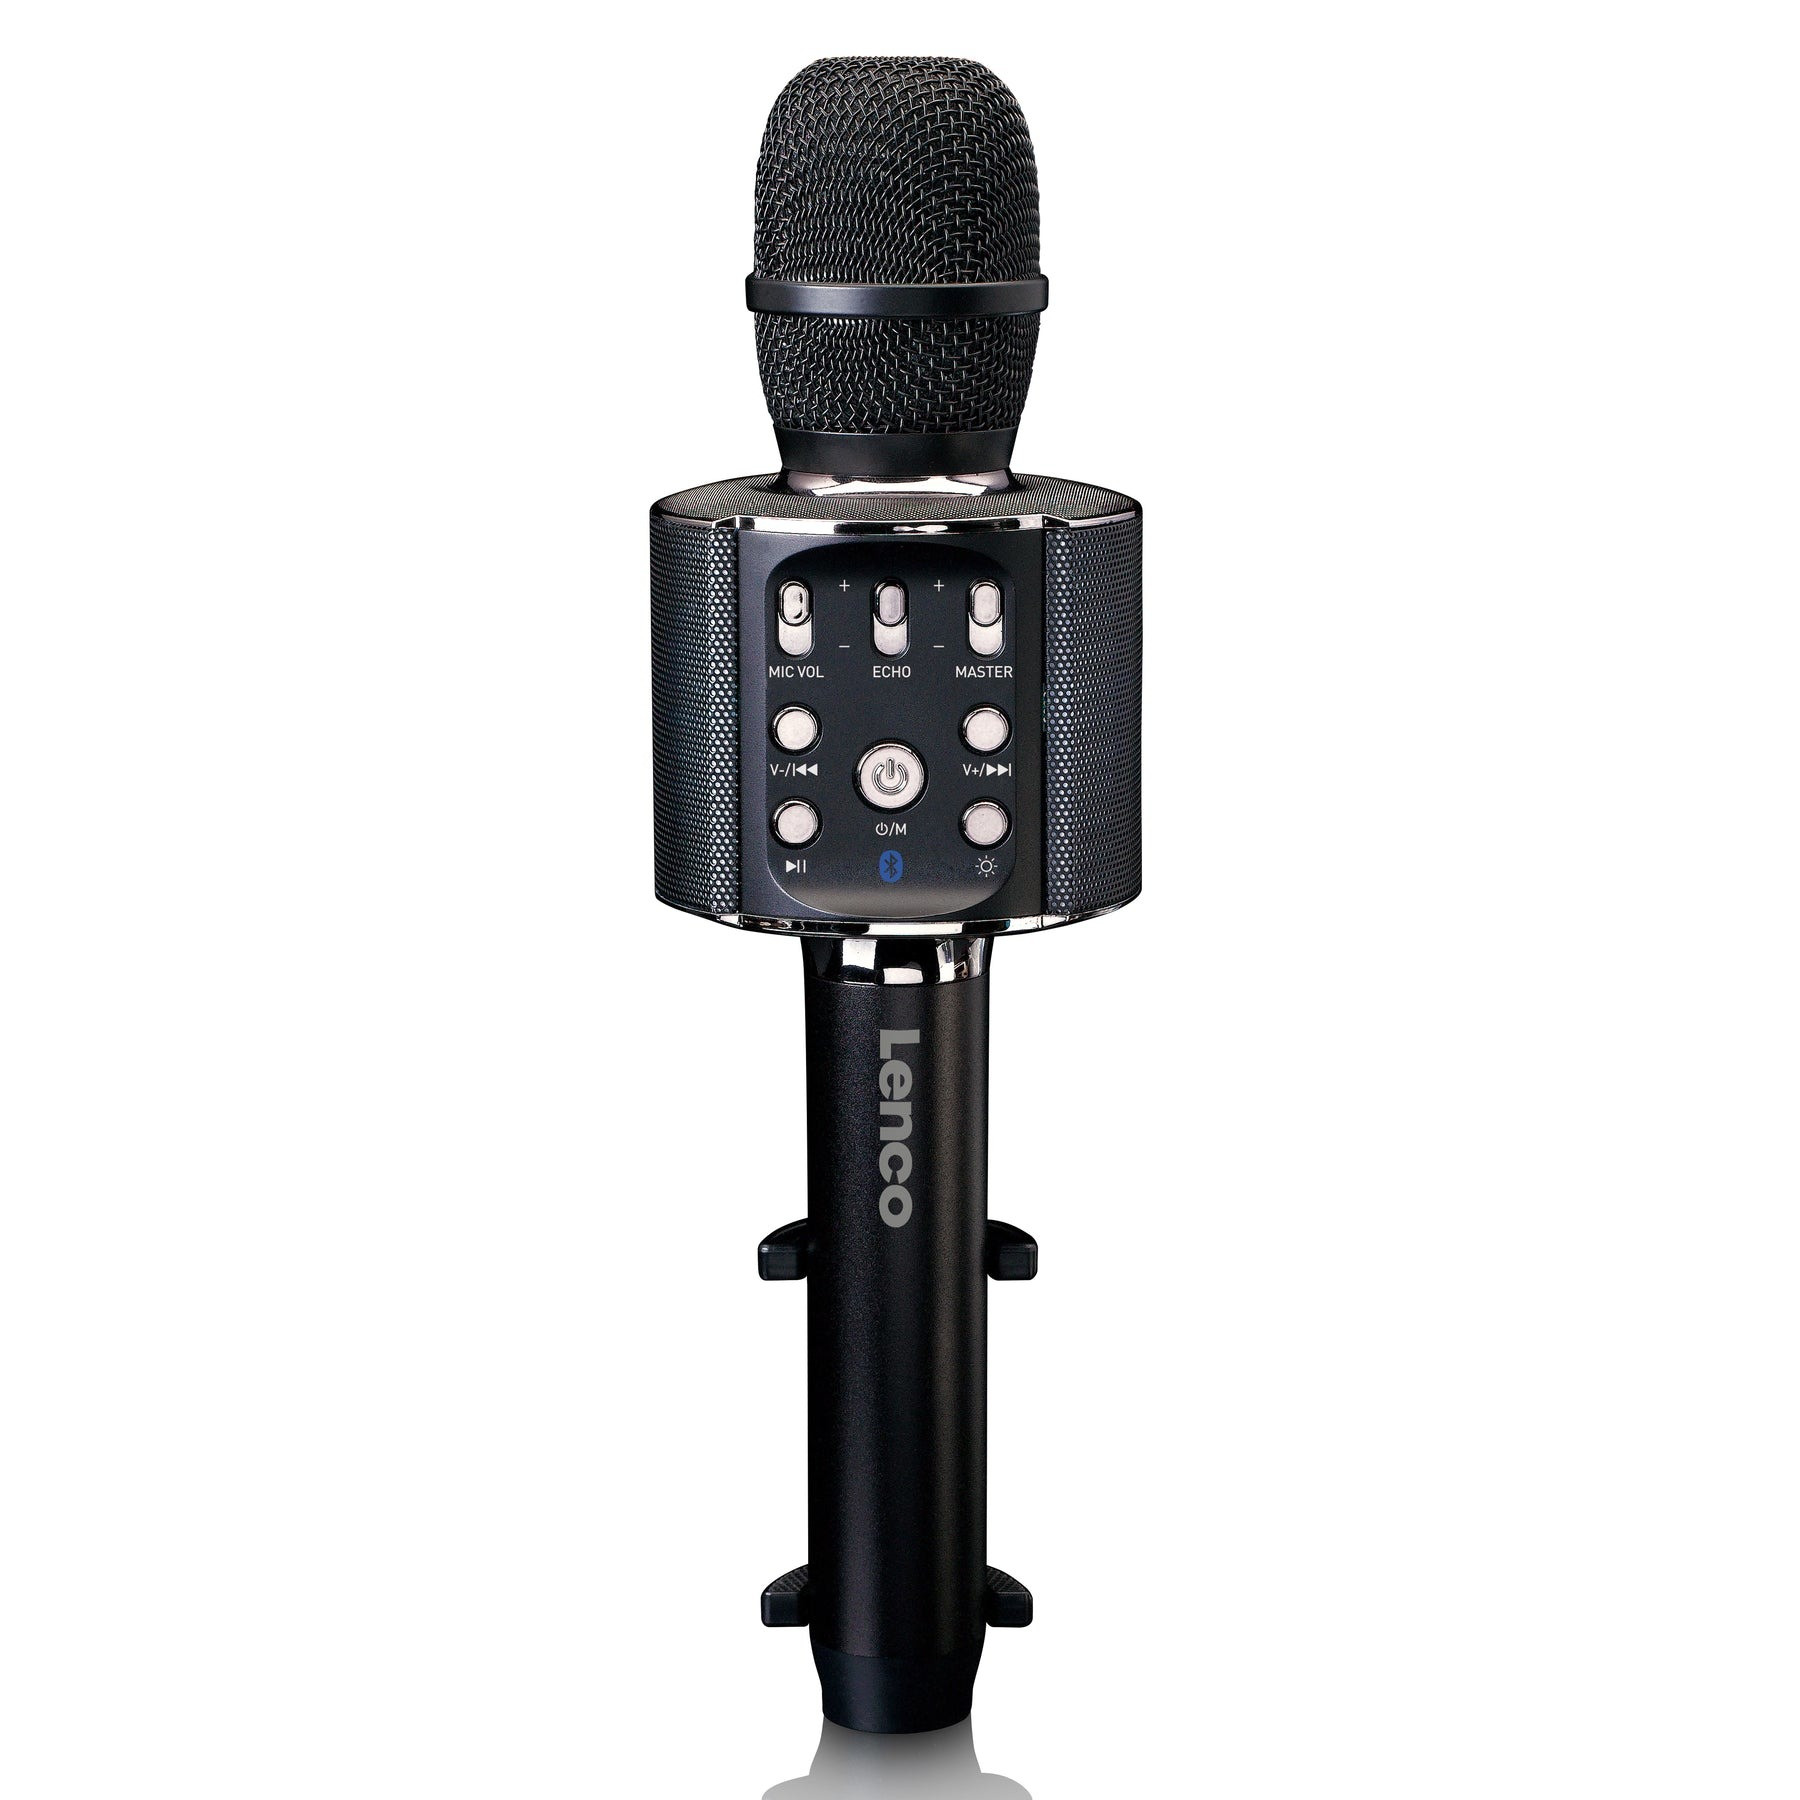 Lenco BMC-090 Microfoon Zwart